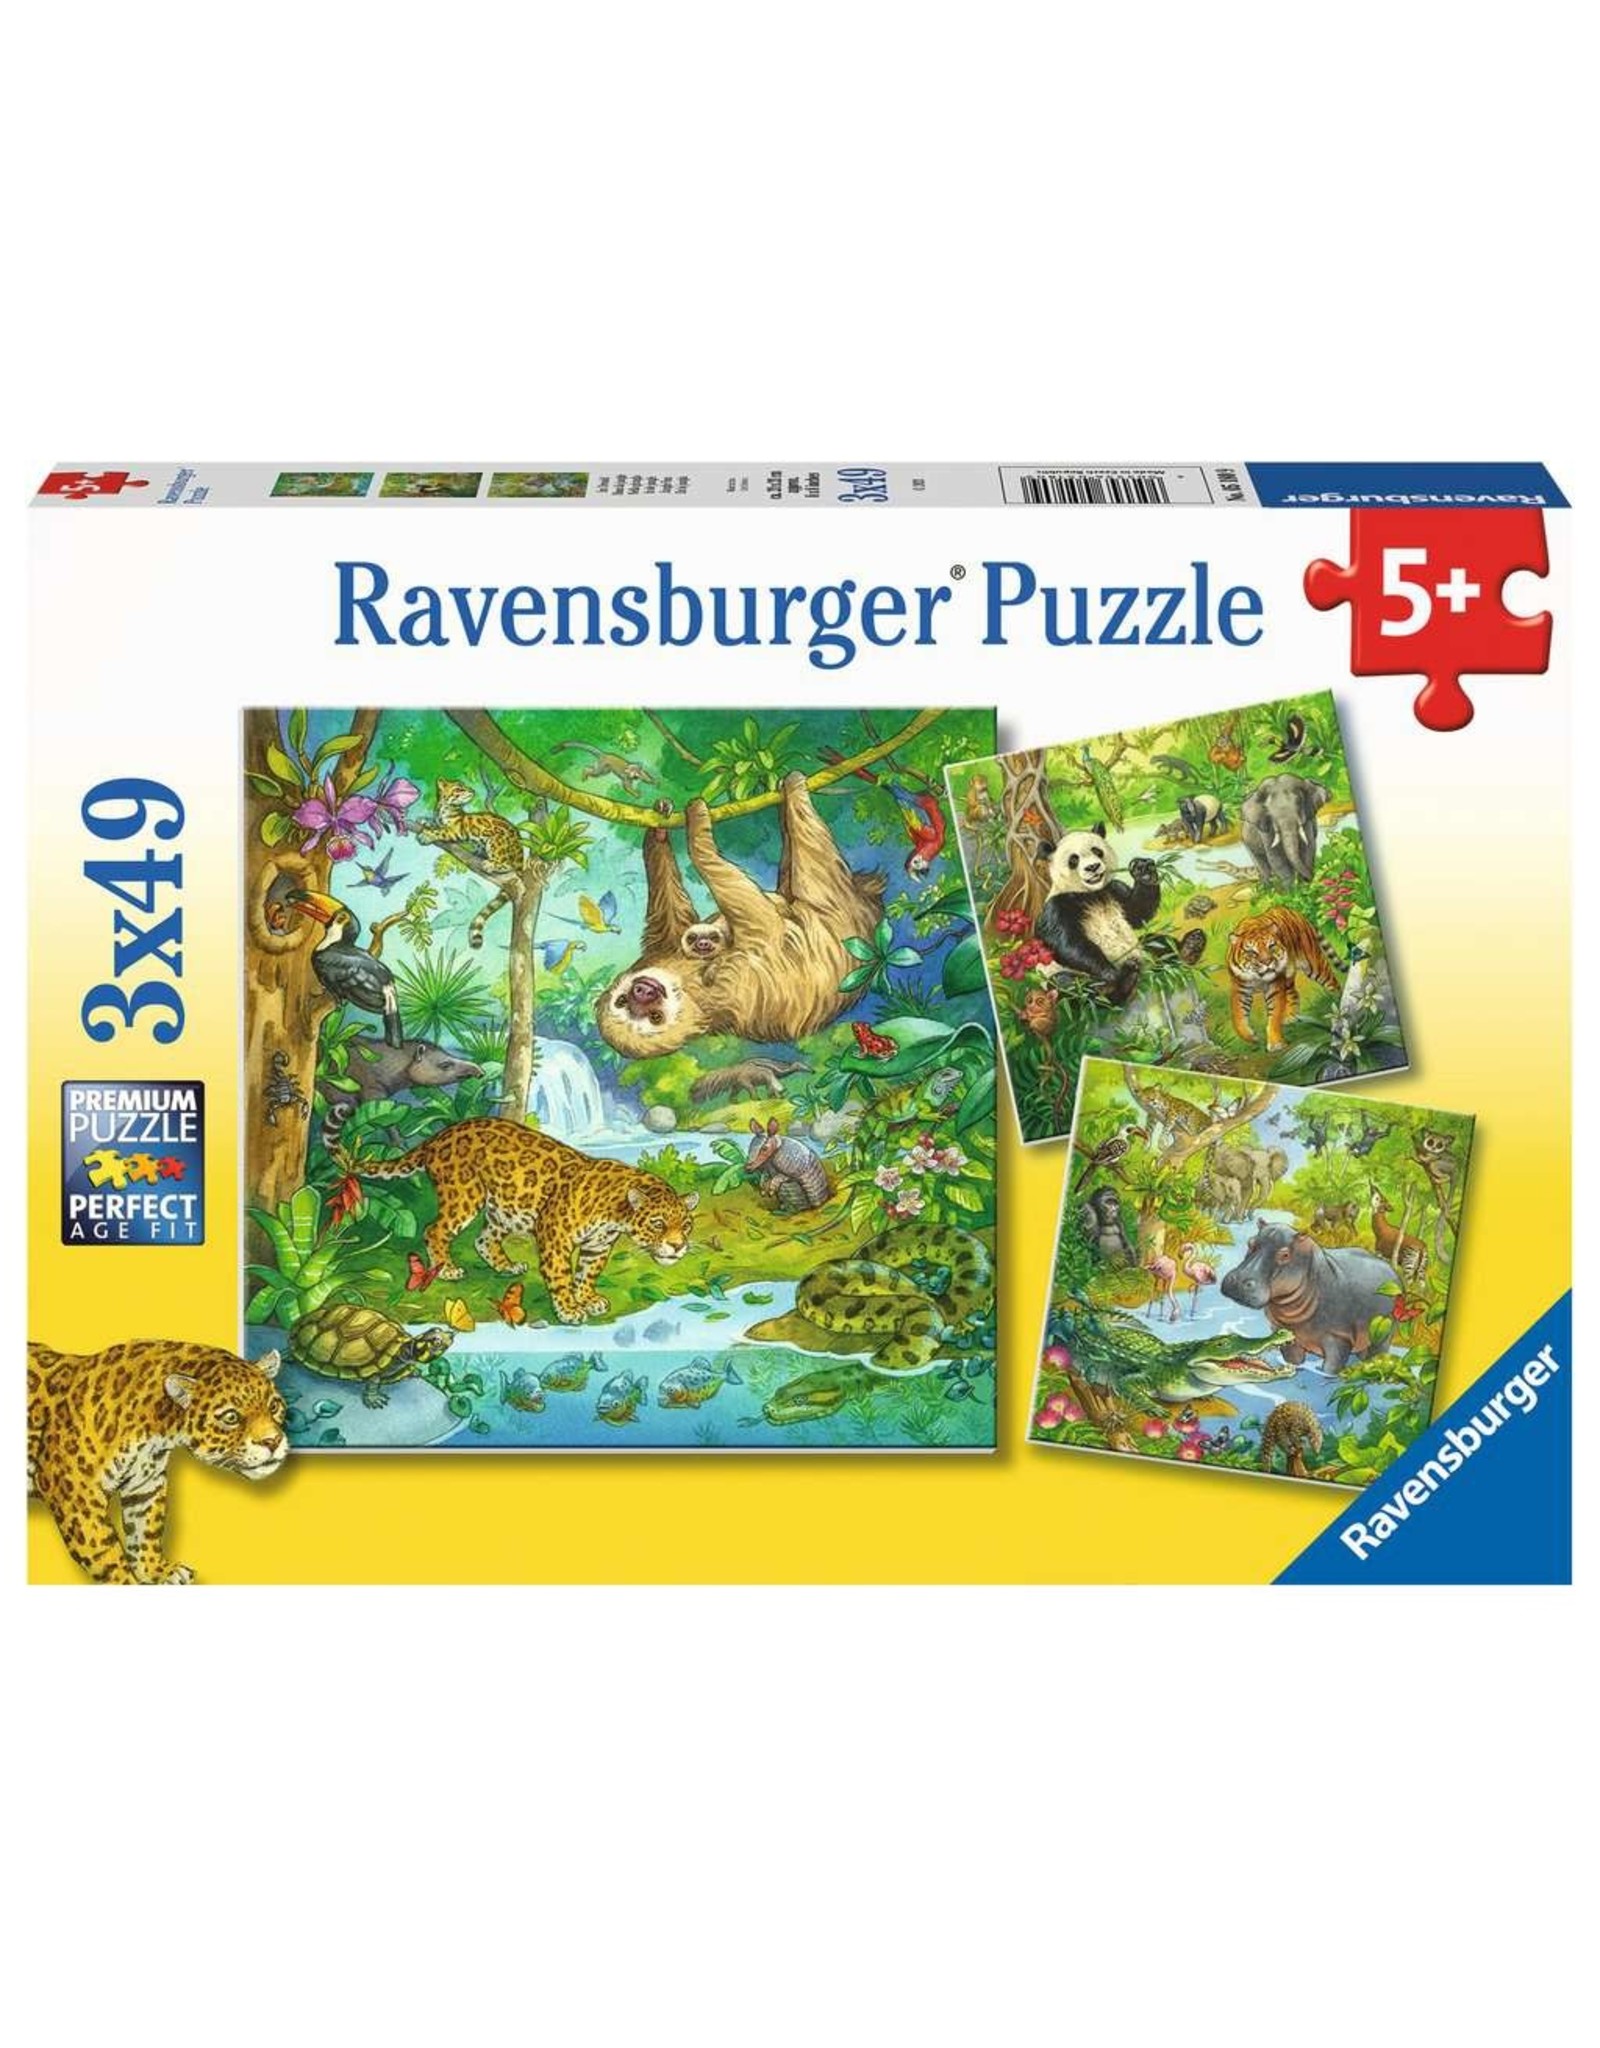 Ravensburger Jungle Fun 3x49pc